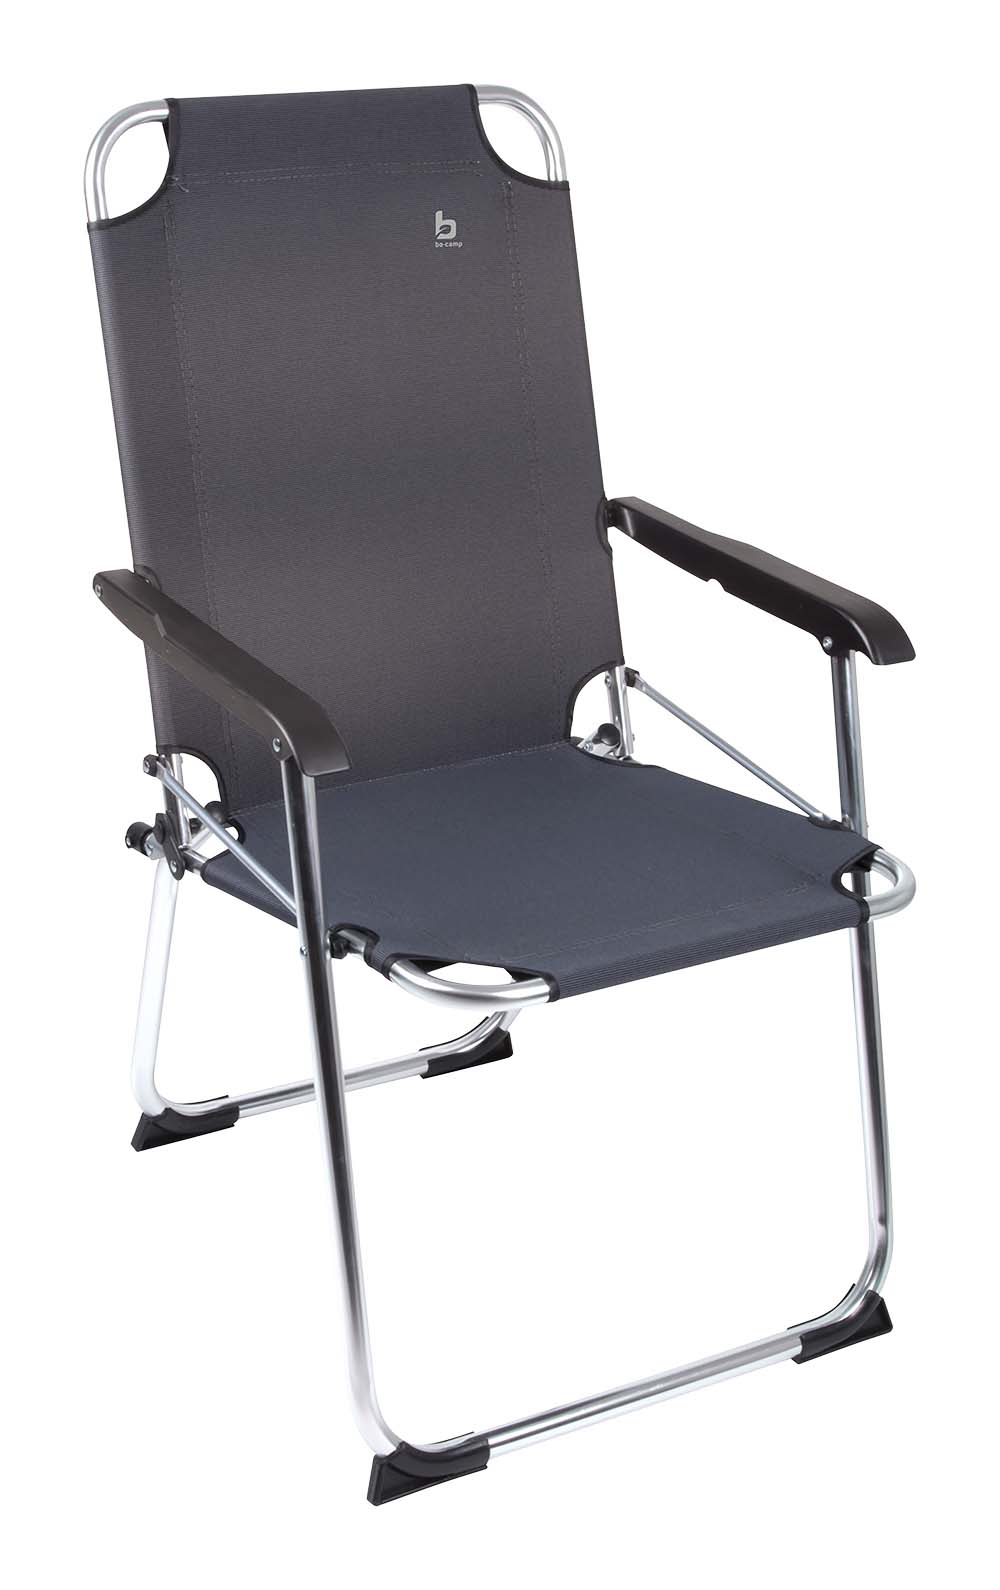 1211937 "Een zeer compacte klapstoel. Een stoel waarbij stijl, comfort en functionaliteit worden gecombineerd. Voorzien van een sterke en luxe 2-tone 600 denier nylon stof en een lichtgewicht aluminium frame. Daarnaast is deze stoel voorzien van extra stabilisatoren en een 'safety-lock' tegen ongewenst inklappen. Compact mee te nemen (ingeklapt lxbxh): 64x55x7 centimeter. Zithoogte: 40 centimeter. Zitdiepte: 43 centimeter. Zitbreedte: 44 centimeter. Maximale belasting: 100 kilogram."